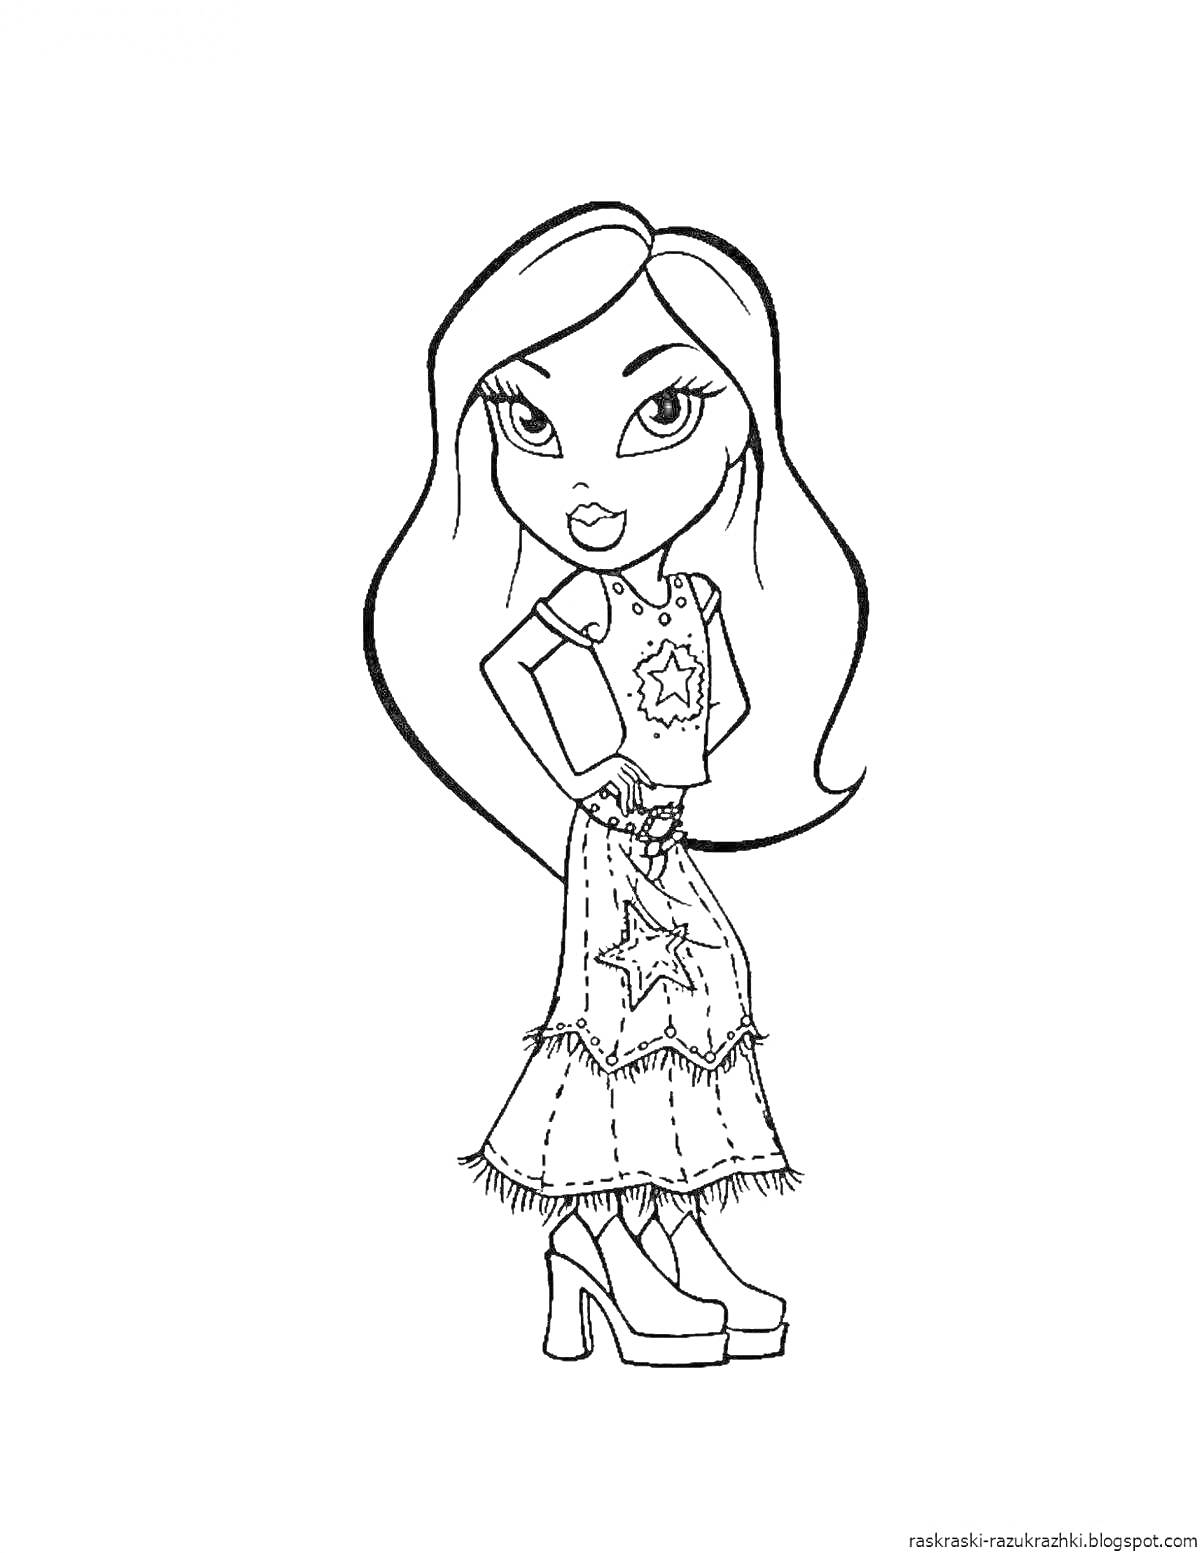 Раскраска Девочка с длинными волосами в футболке со звездой и юбке с украшением-звездой на высоких каблуках